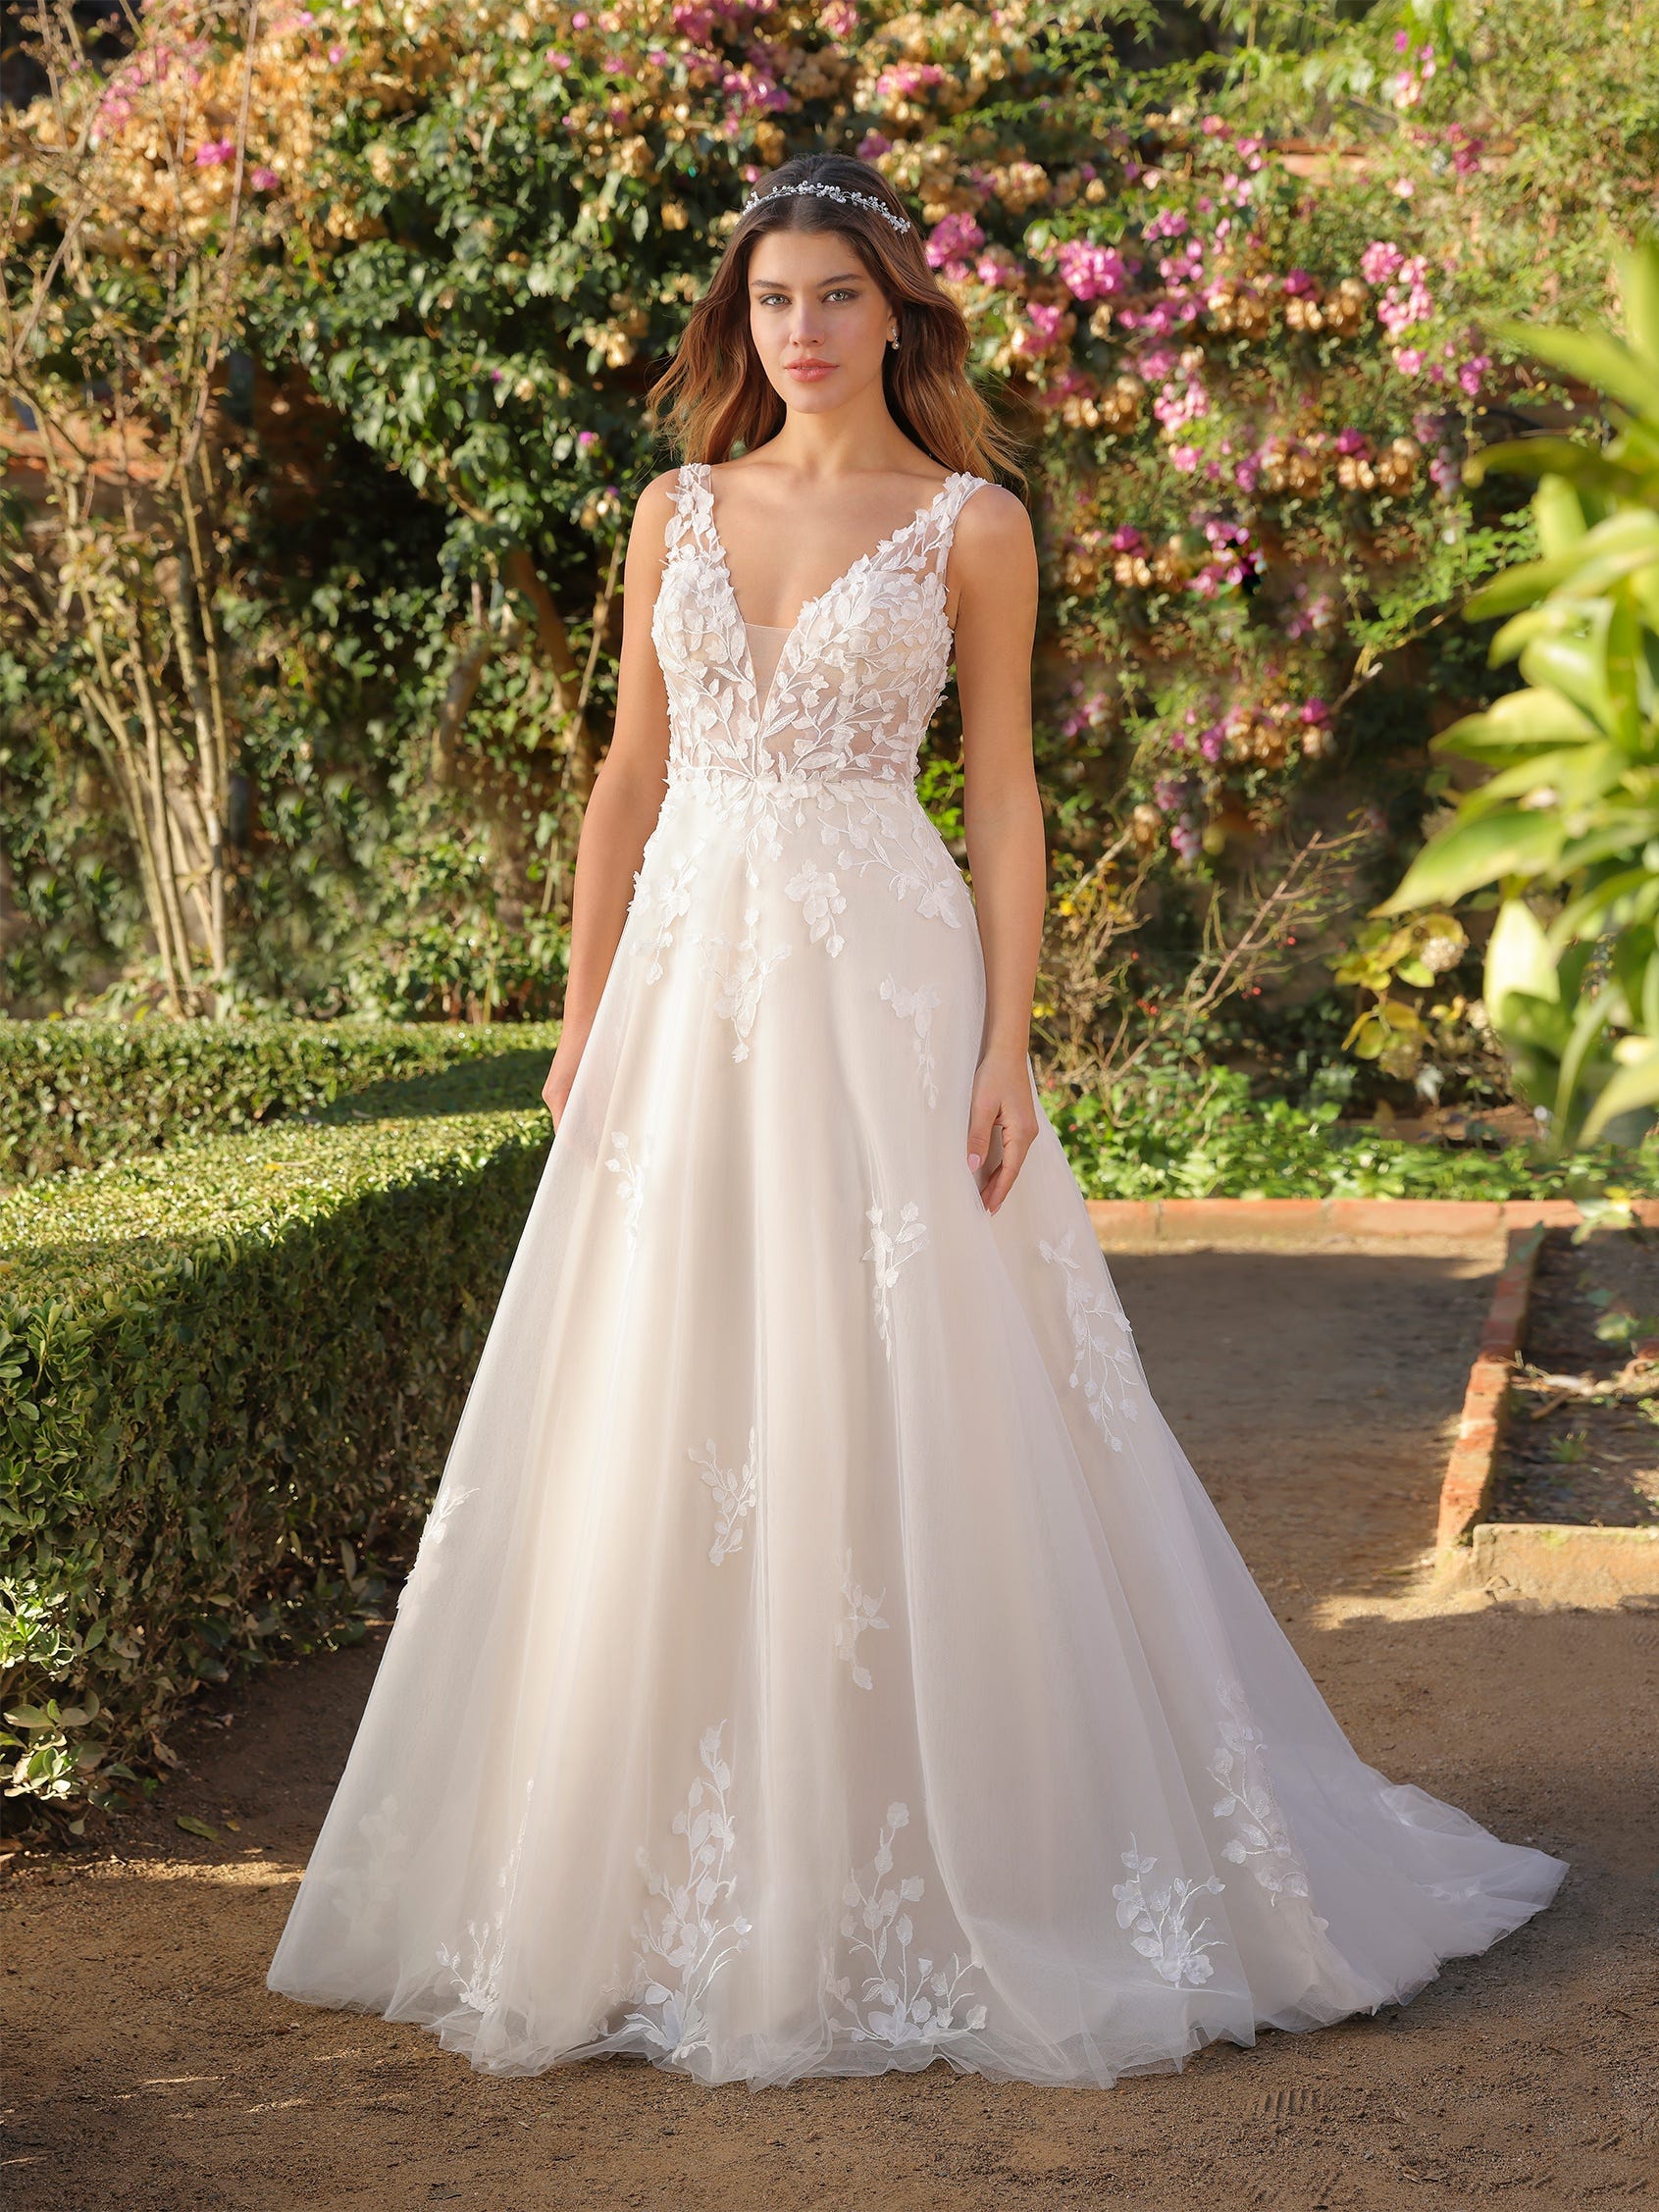 Princess wedding dress | Ladybird Princess collection